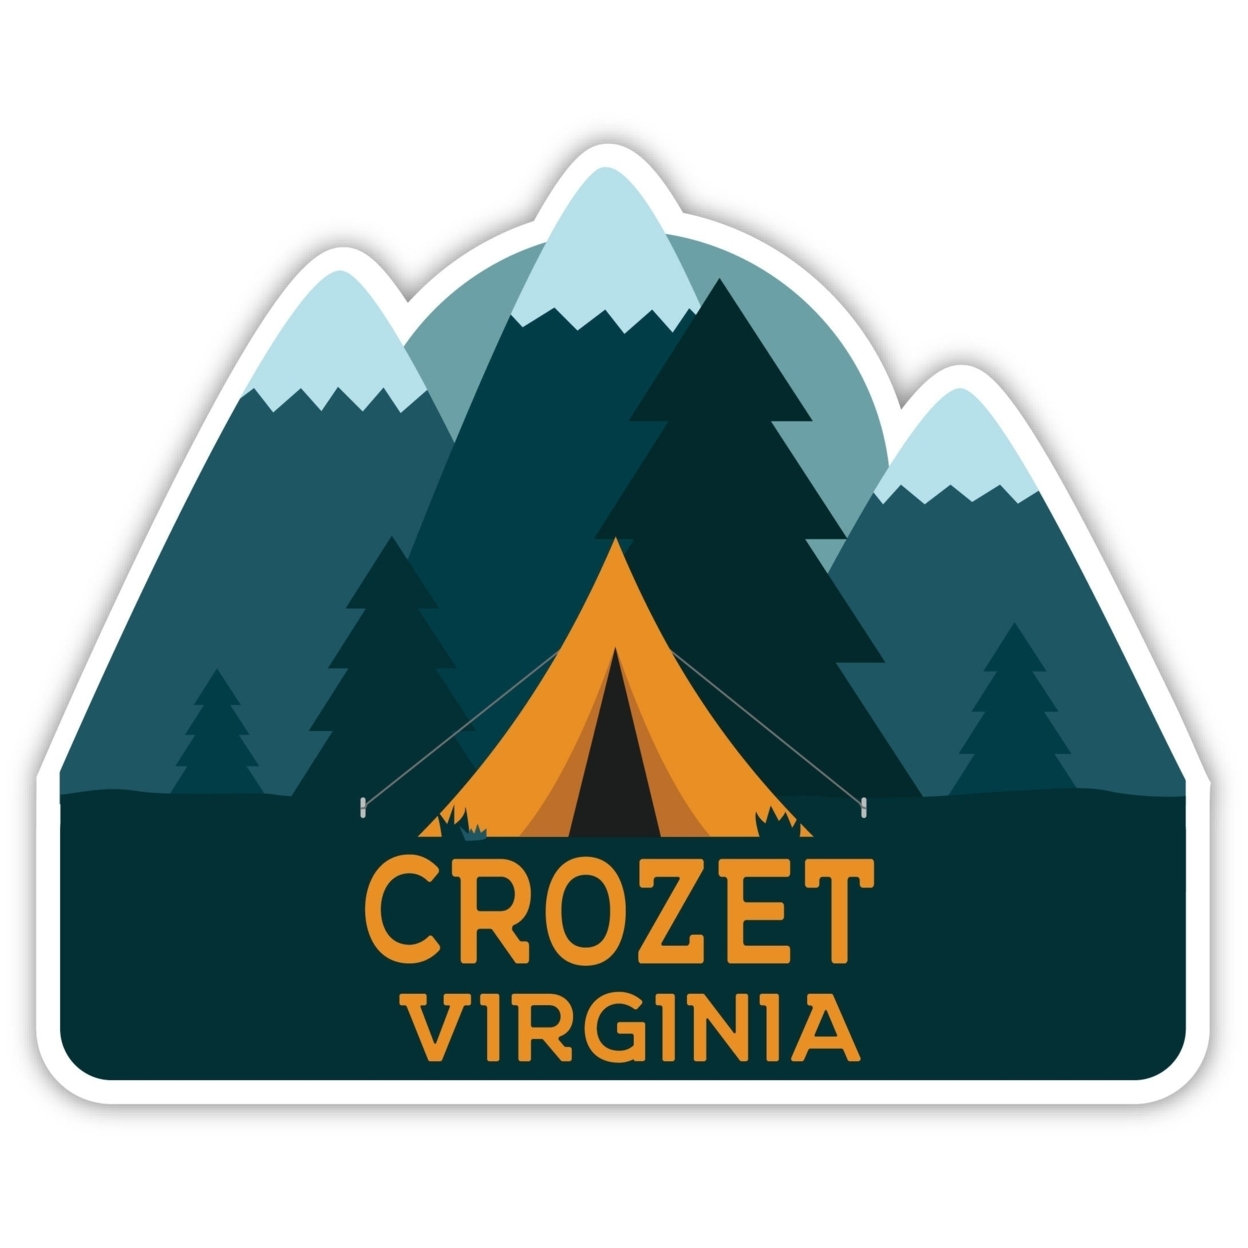 Crozet Virginia Souvenir Decorative Stickers (Choose Theme And Size) - Single Unit, 4-Inch, Tent